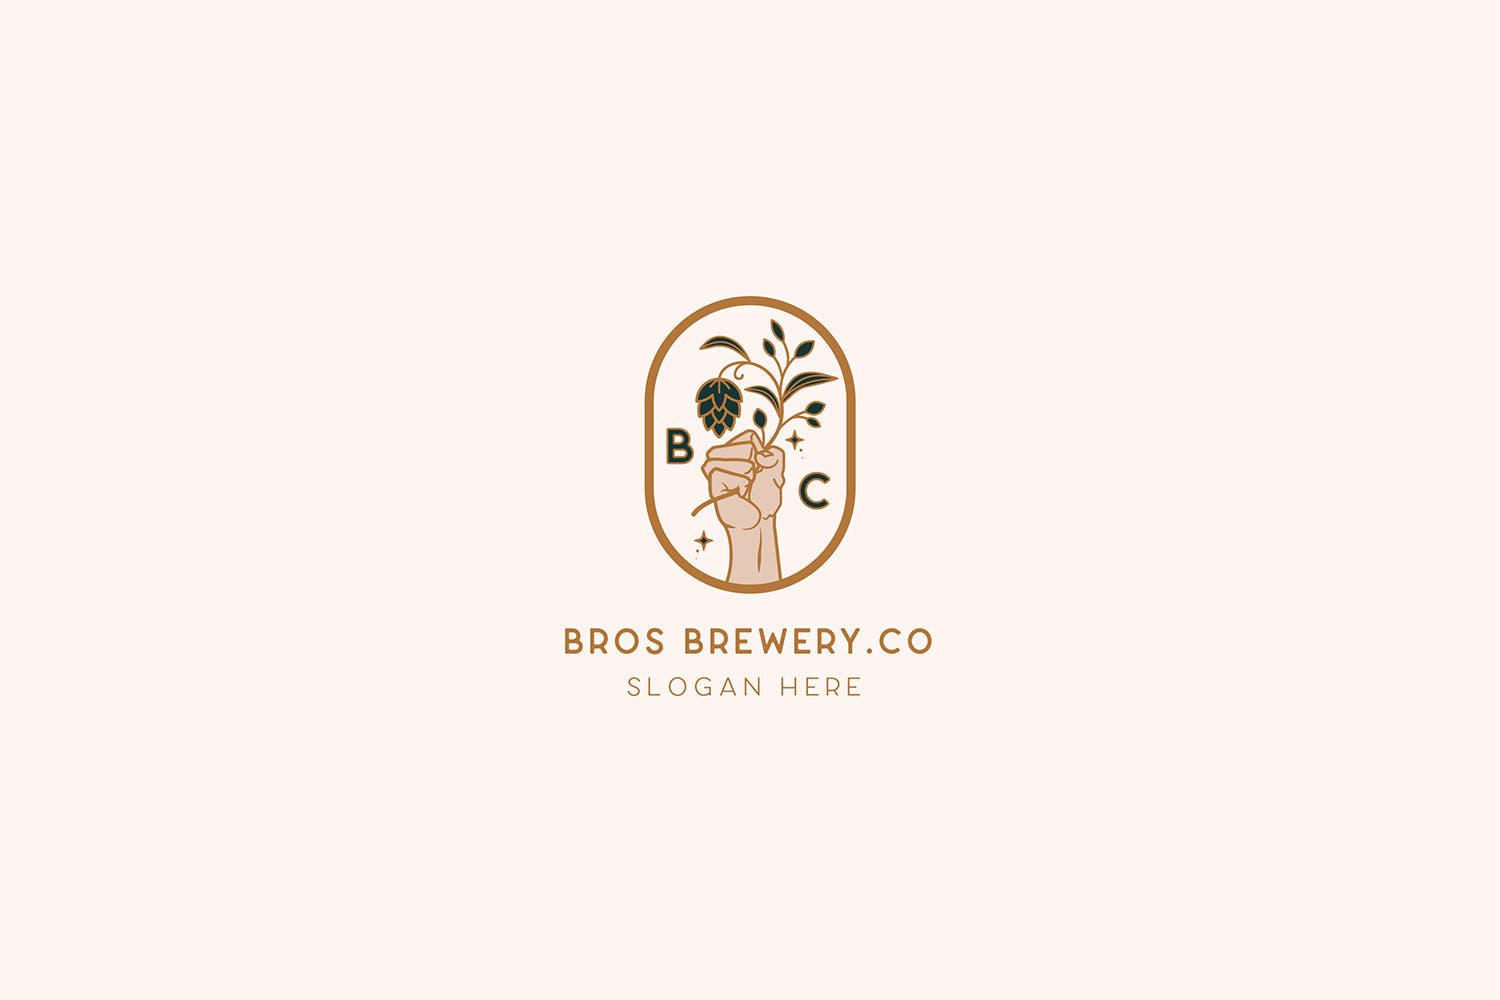 咖啡/啤酒品牌Logo设计素材库精选模板 Brewery Brotherhood cafe beer Logo Template插图(1)